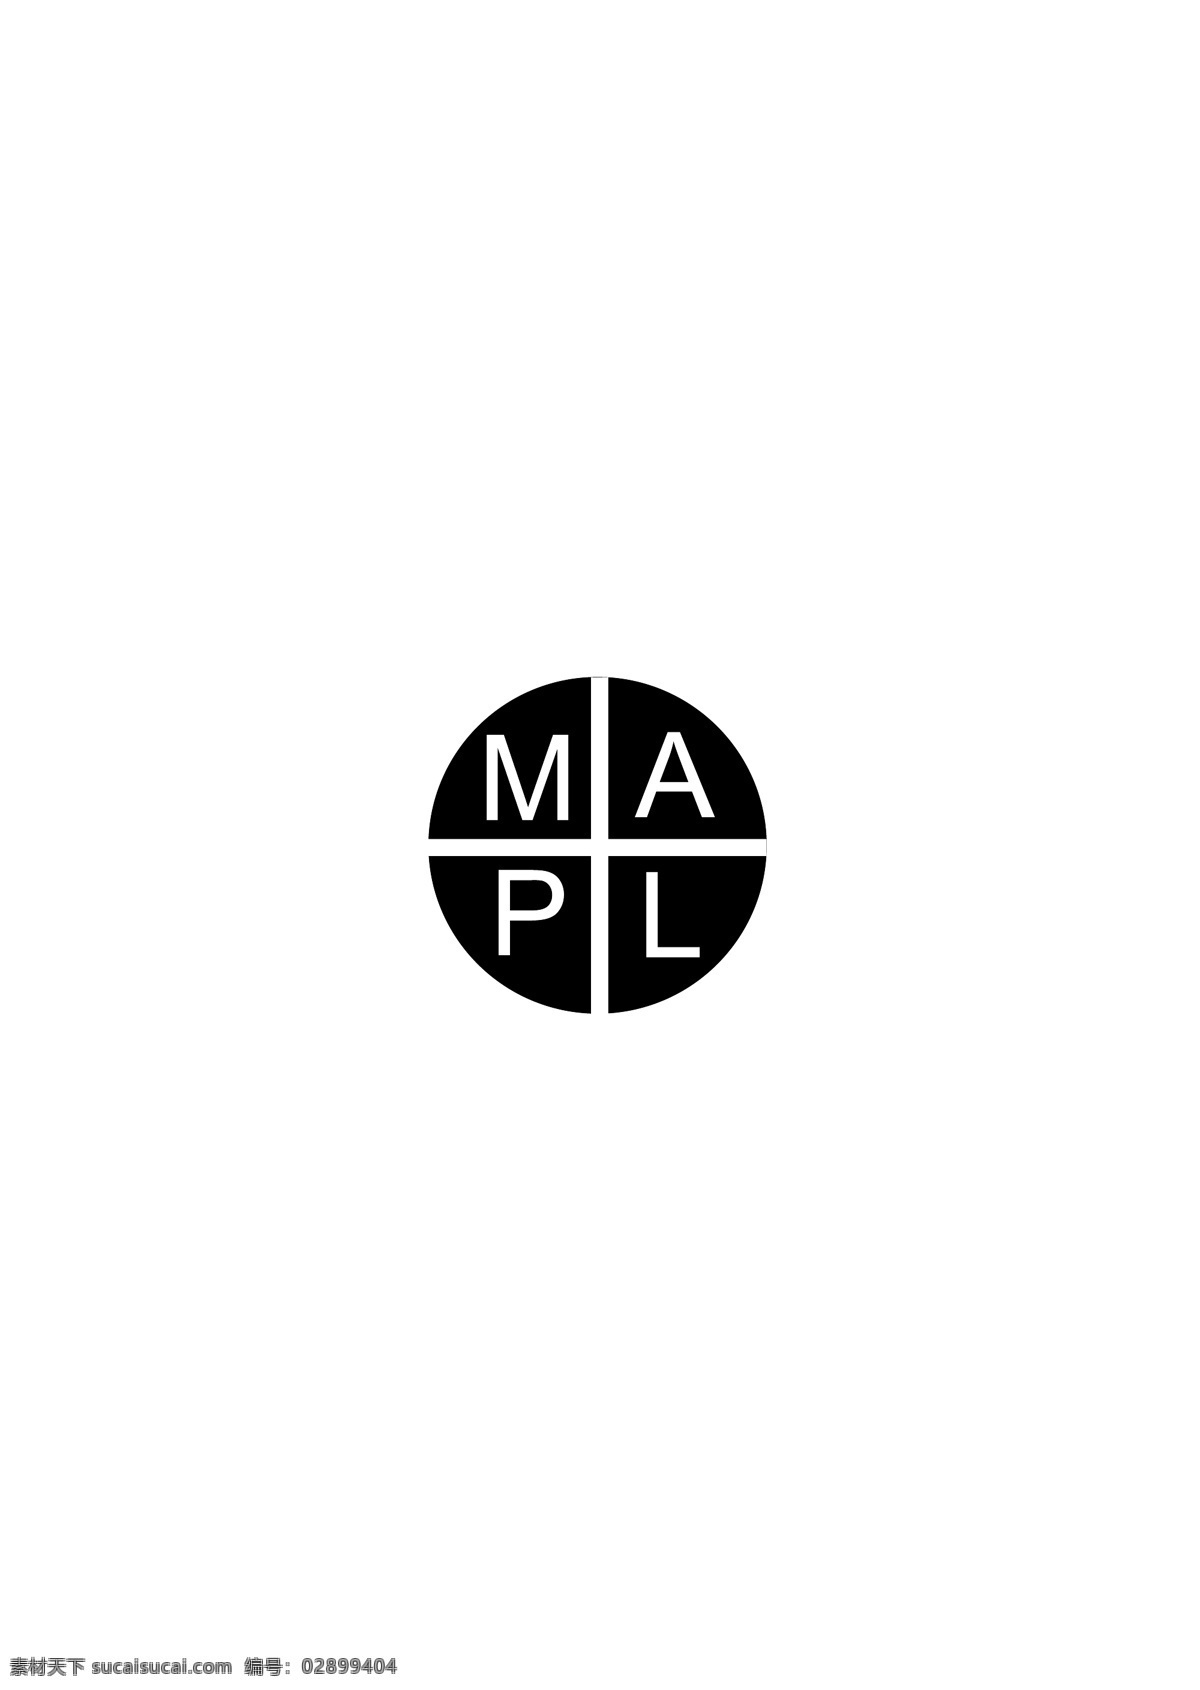 mapl logo 设计欣赏 唱片 专辑 标志 标志设计 欣赏 矢量下载 网页矢量 商业矢量 logo大全 红色